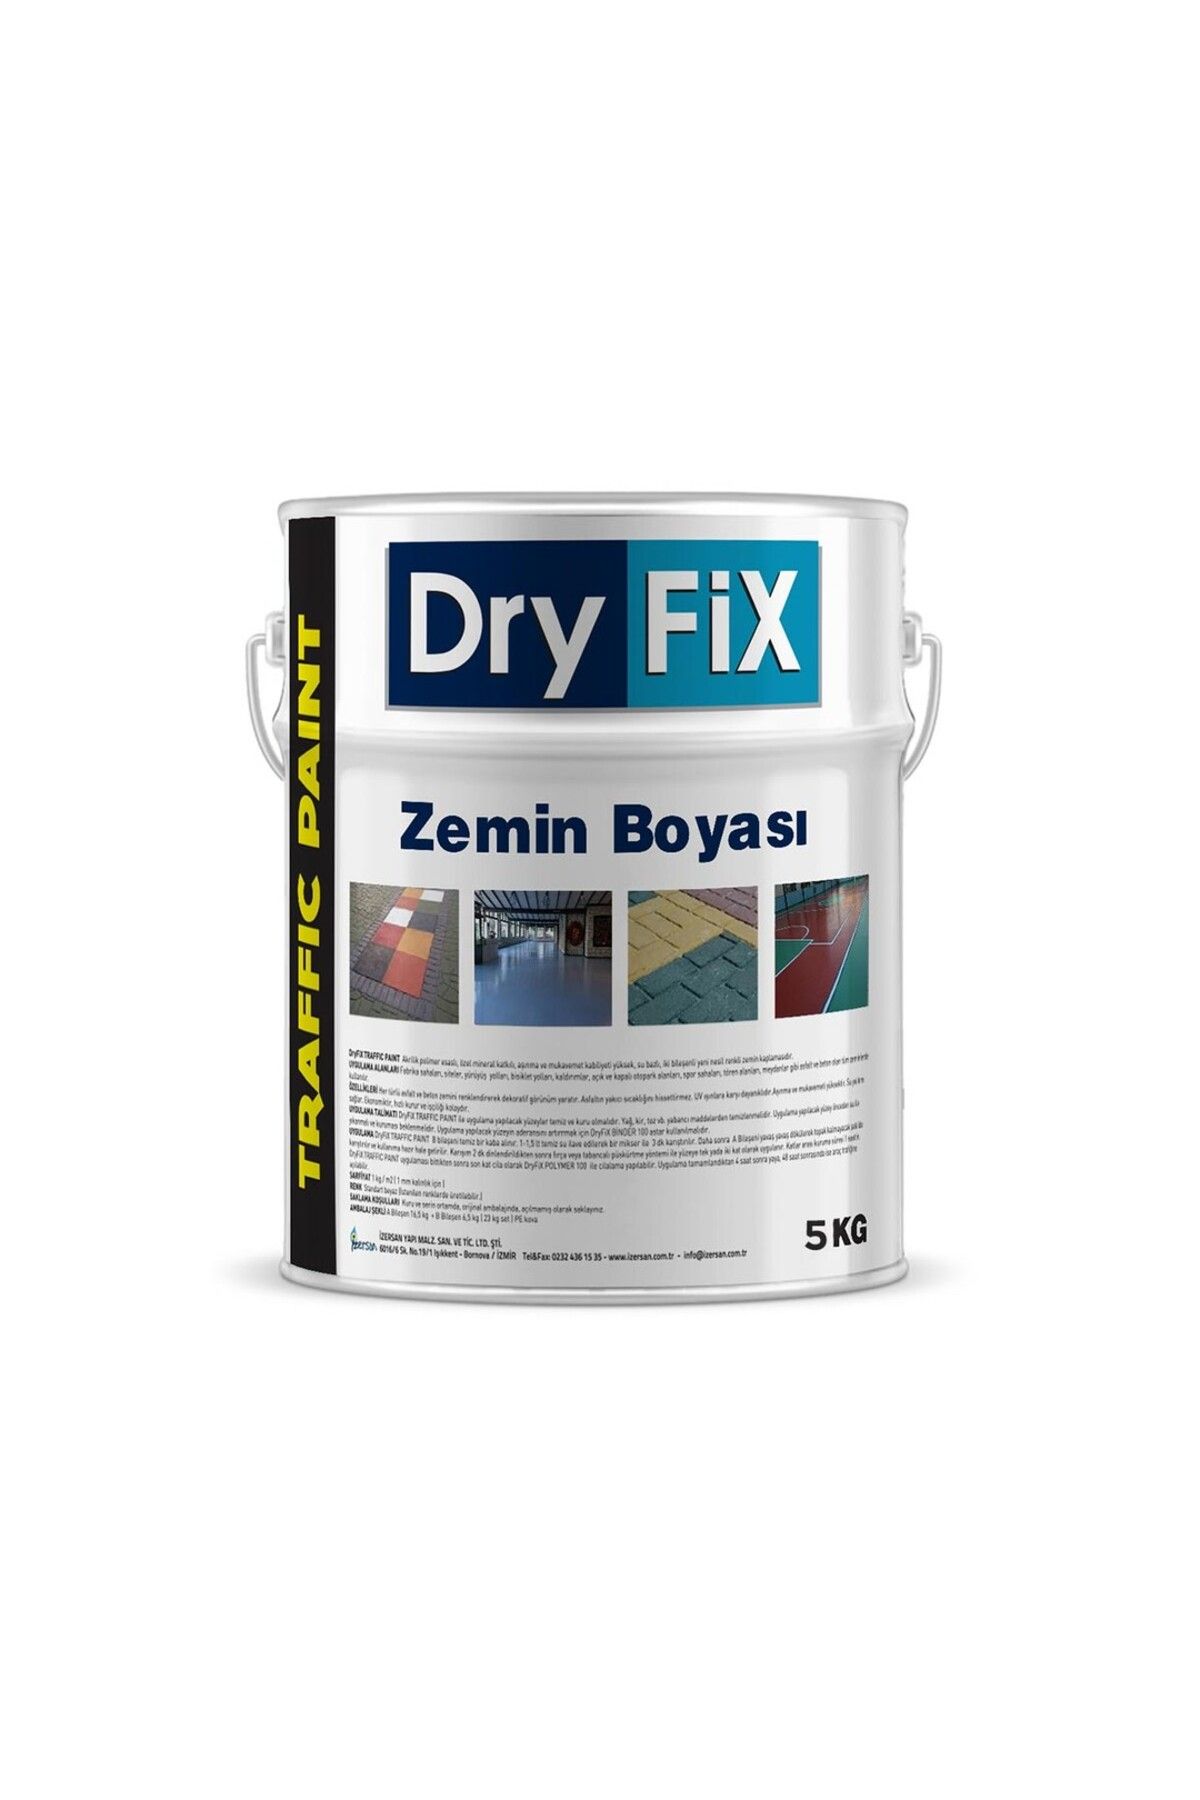 Dryfix Zemin Boyası | Traffic Paint